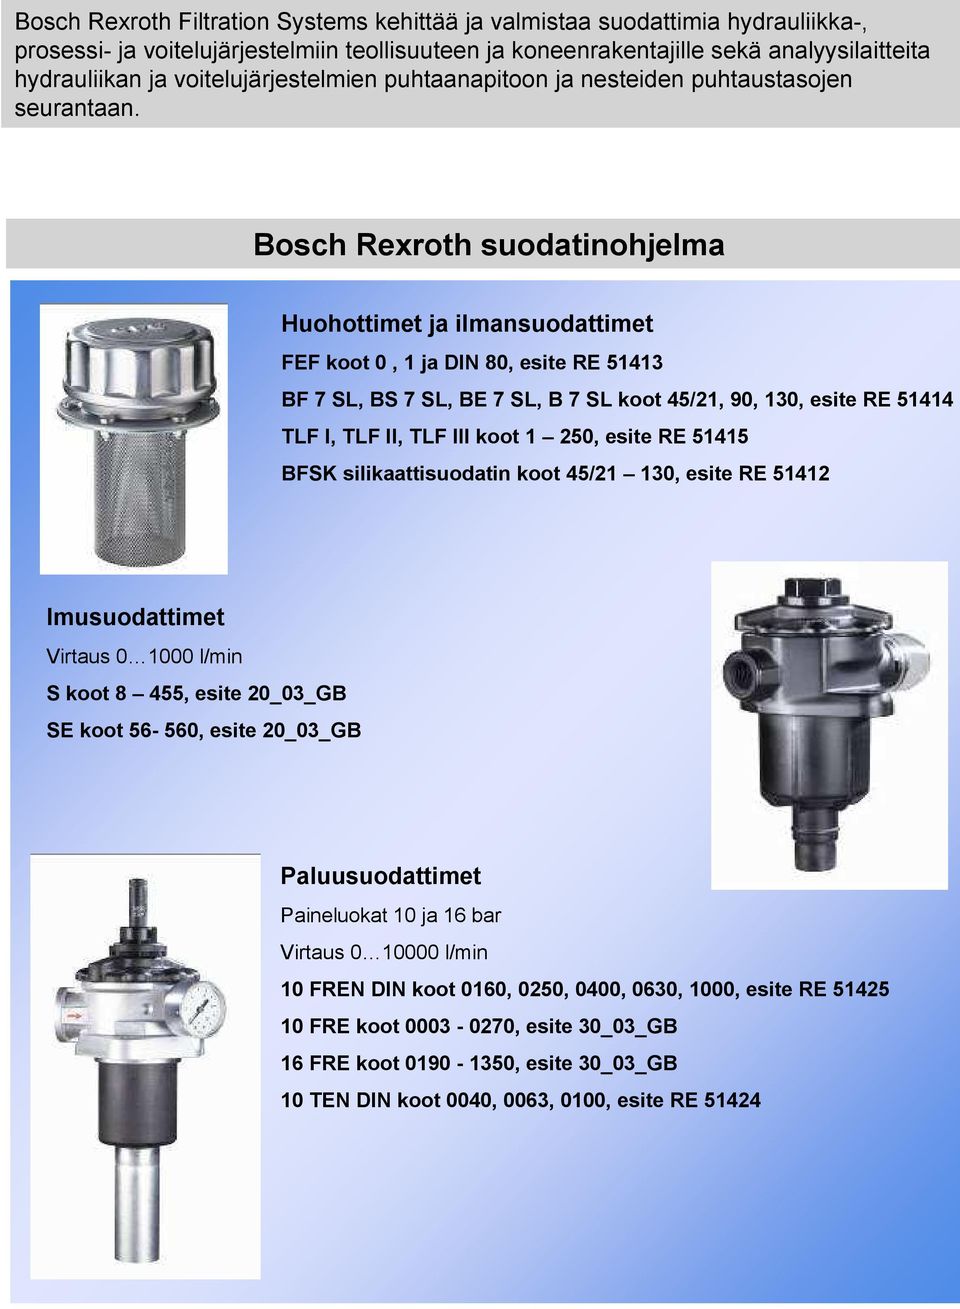 Bosch Rexroth suodatinohjelma Huohottimet ja ilmansuodattimet FEF koot 0, 1 ja DIN 80, esite RE 51413 BF 7 SL, BS 7 SL, BE 7 SL, B 7 SL koot 45/21, 90, 130, esite RE 51414 TLF I, TLF II, TLF III koot